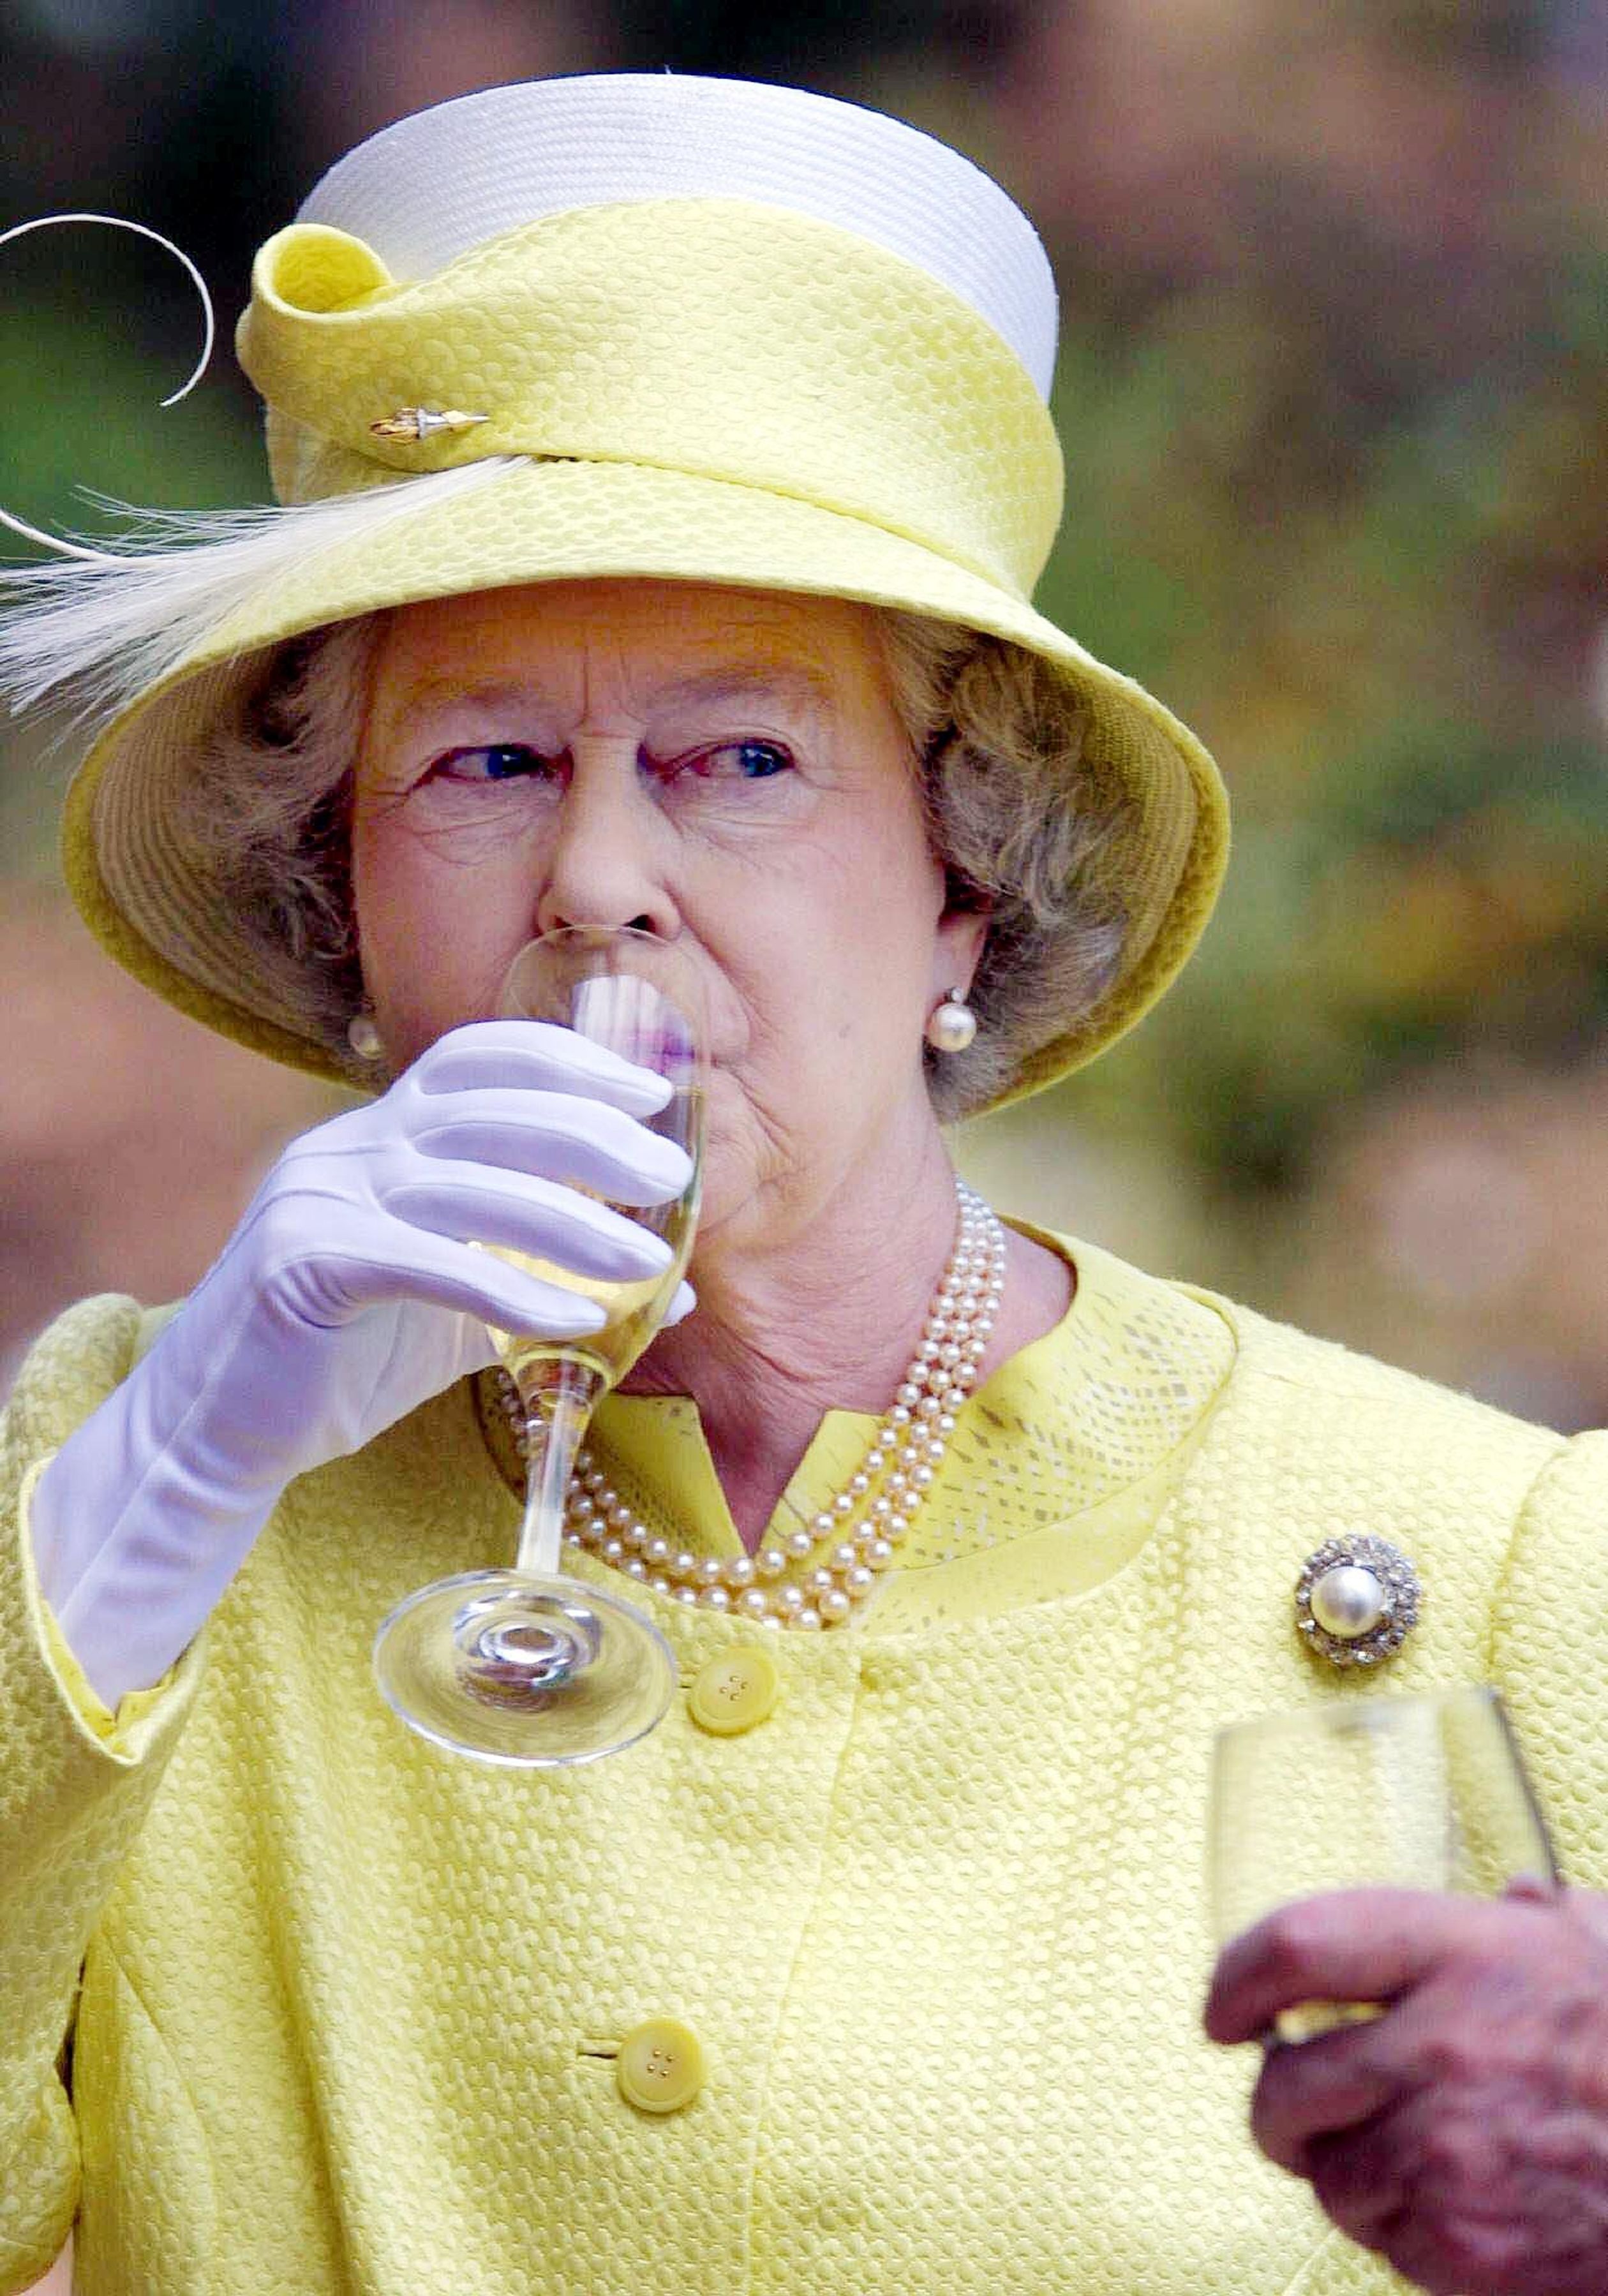 Als deel van haar gouden jubileumtournee in 2002 bezoekt koningin Elizabeth Chateau Barrosa in Adelaide, Australië. Daar proeft ze een Barrosa-wijn.